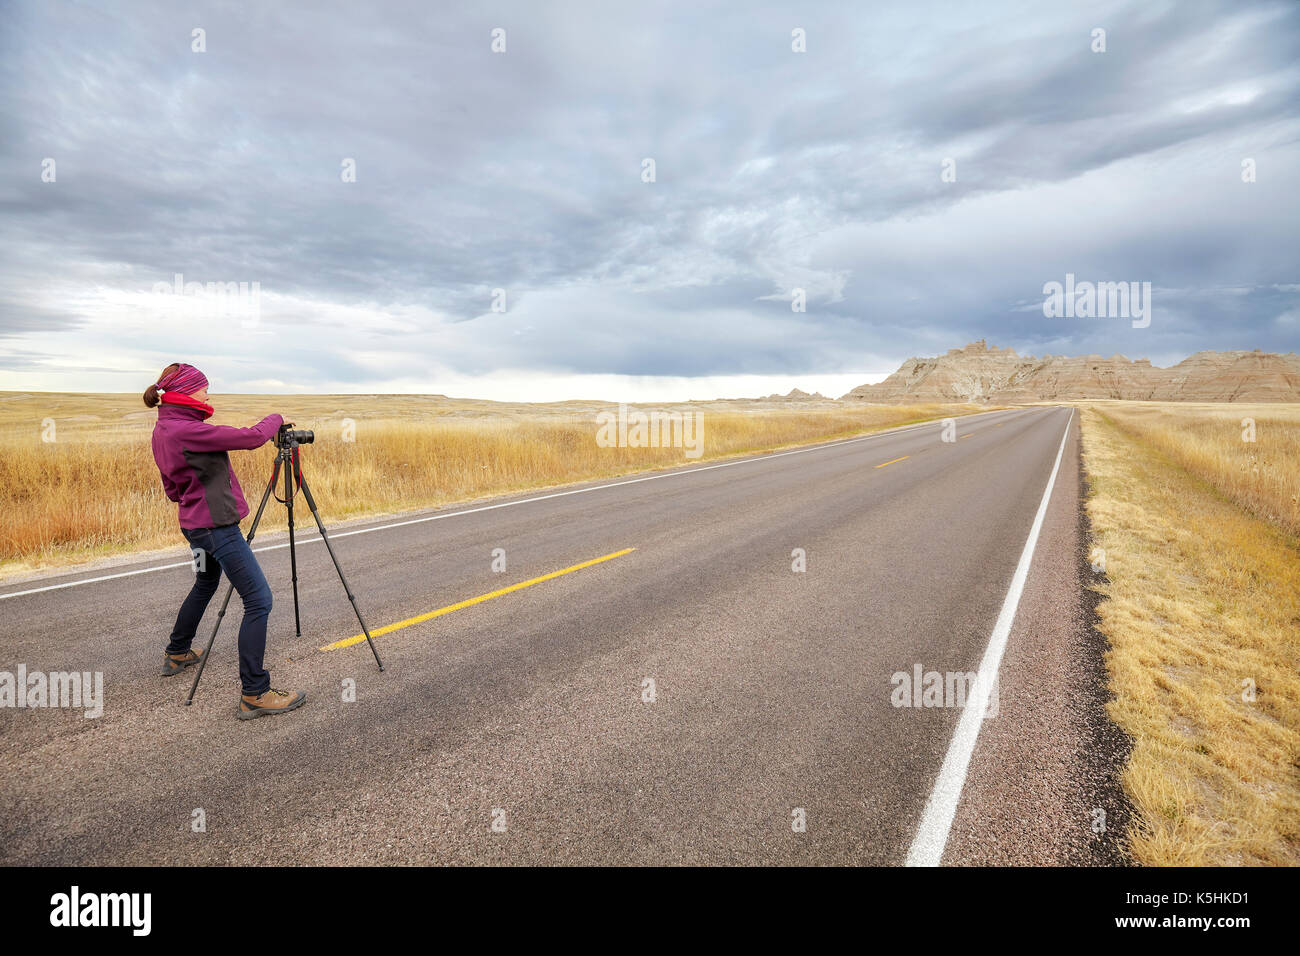 Photographe de paysage prend des photos sur une route vide avec ciel d'orage, de voyage ou de travail concept, Badlands National Park (Dakota du Sud, USA. Banque D'Images